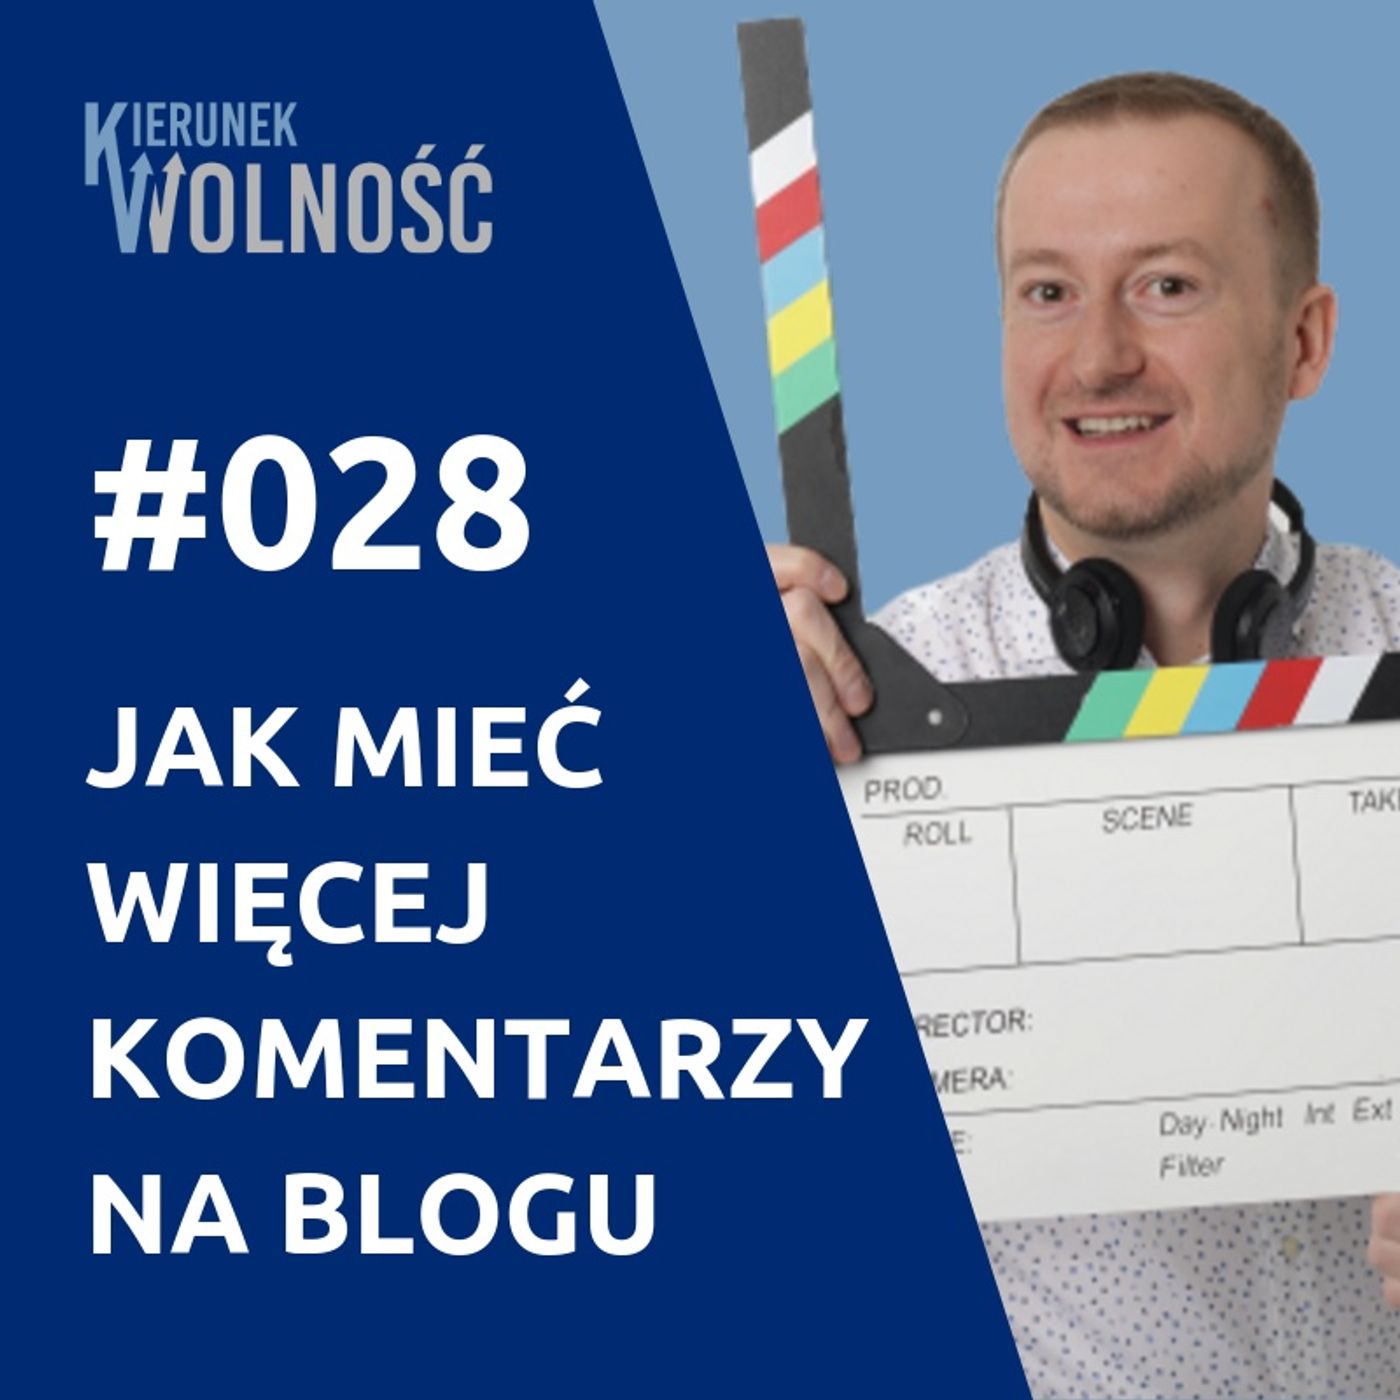 KW028: Jak mieć więcej komentarzy na blogu - Mariusz Kobak